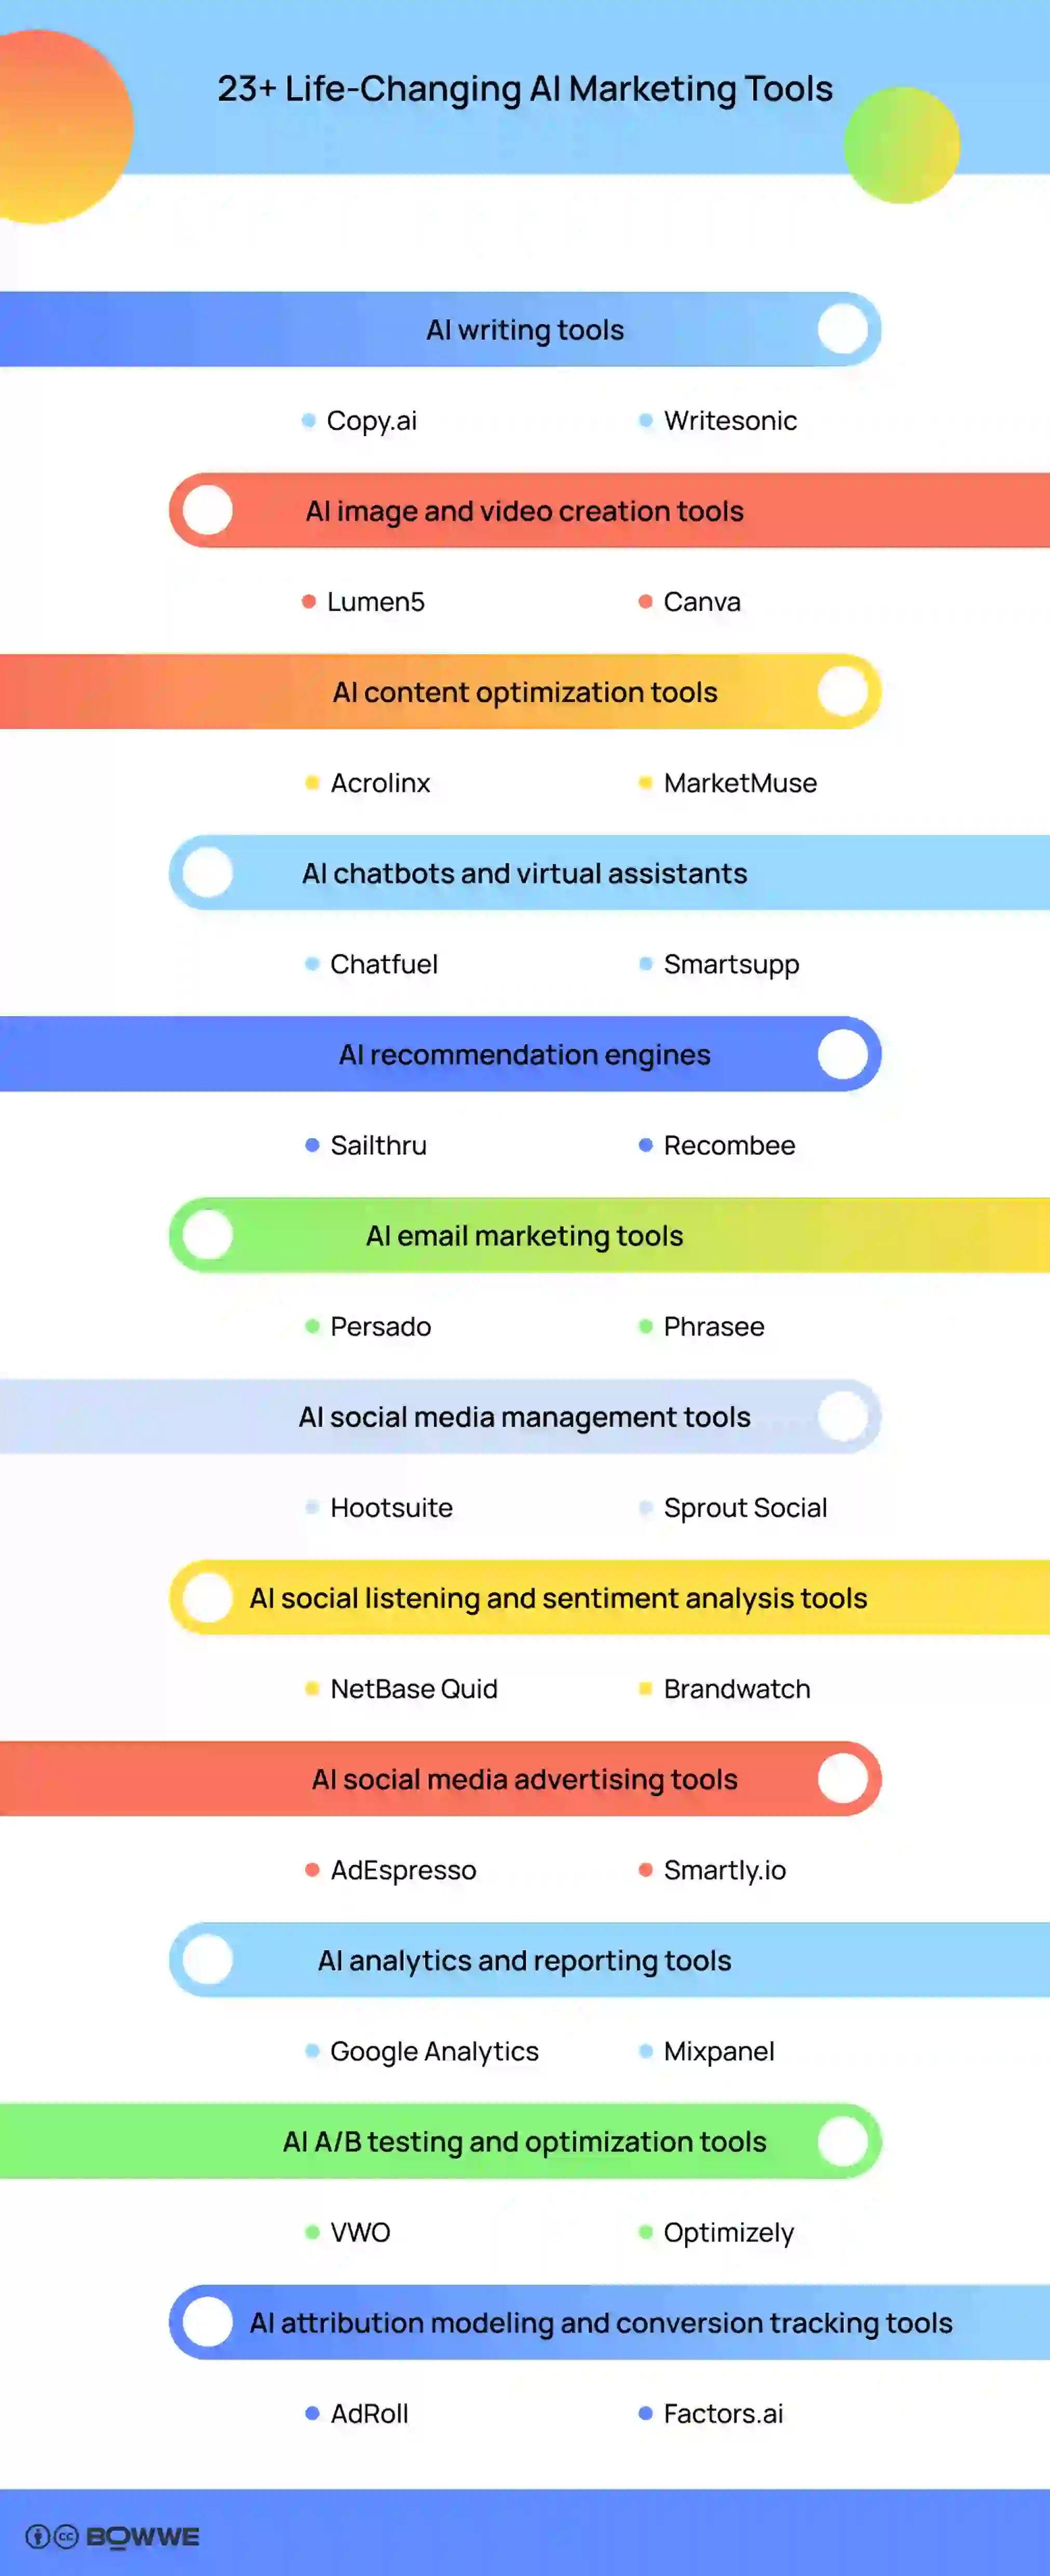 Más de 23 herramientas de marketing de IA que cambian la vida